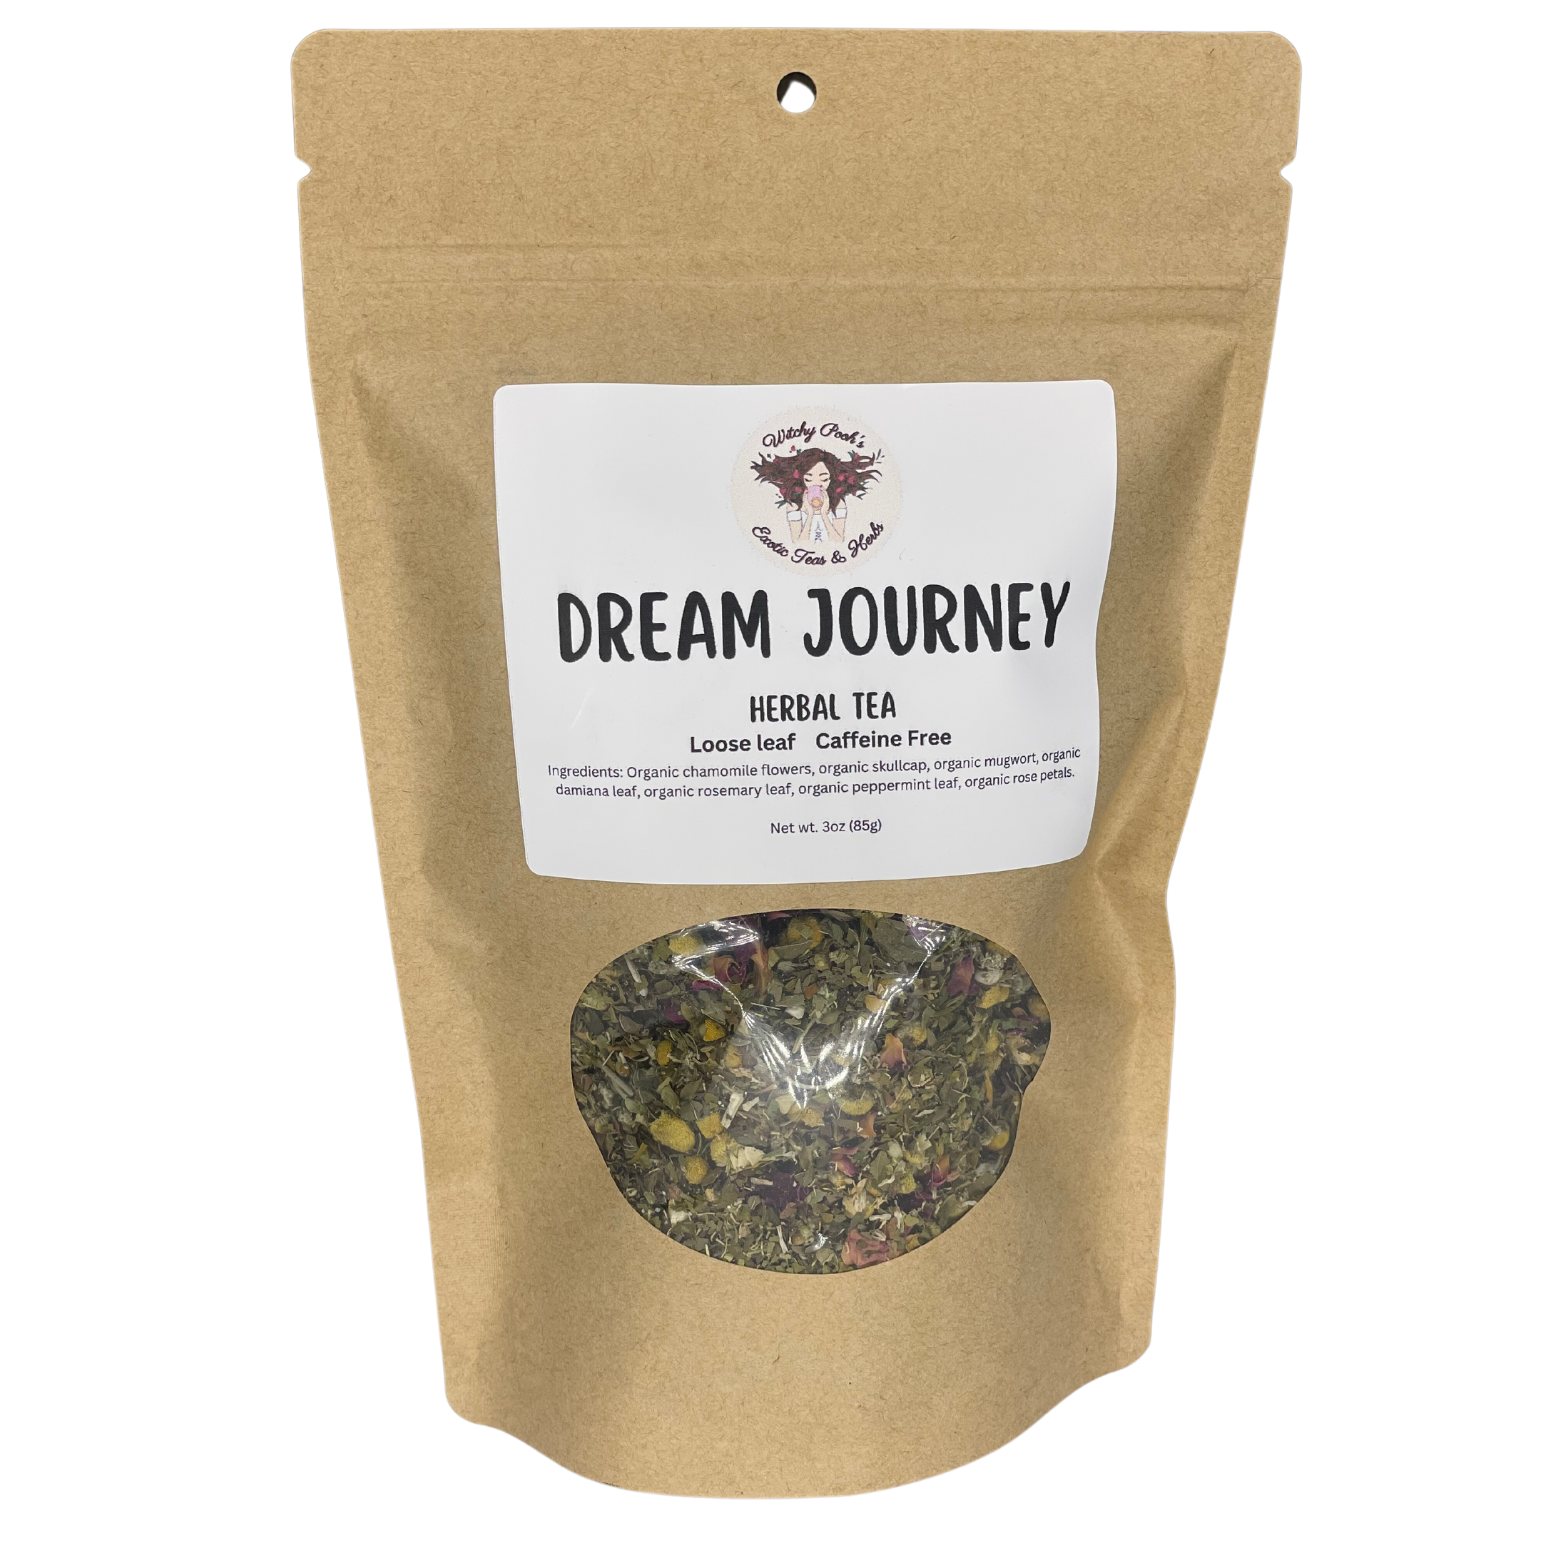 Dream Journey Tea, Loose Leaf Tea, Herbal Tea, Caffeine Free Tea, Organic Tea, Functional Tea-7